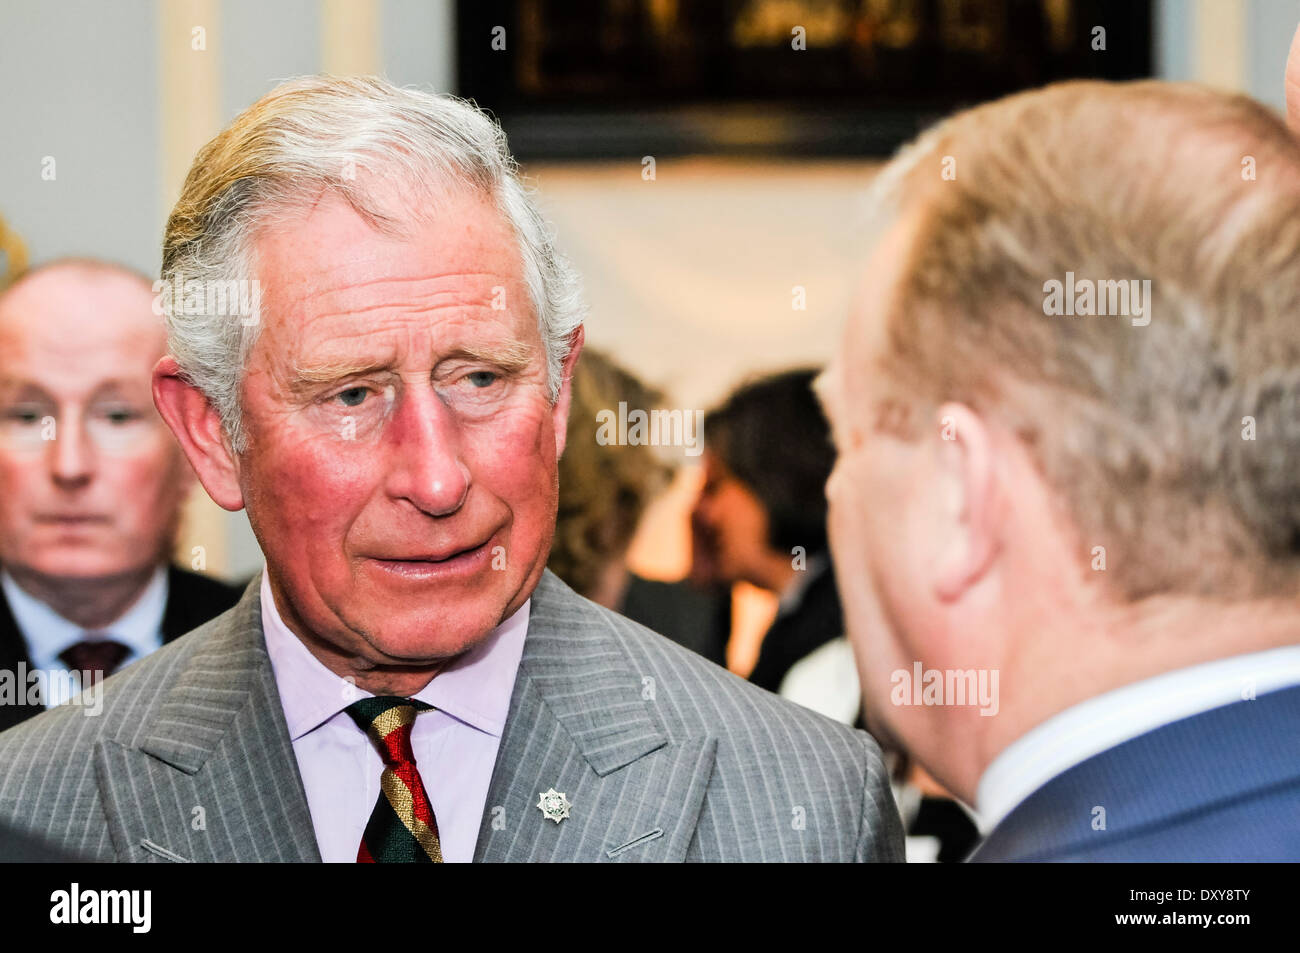 Hillsborough, Nordirland. 1. April 2014 - Prinz Charles, Prinz von Wales, trifft sich mit Northern Ireland Tourist Board-Mitgliedern bei der Hillsborough Castle Credit: Stephen Barnes/Alamy Live News Stockfoto